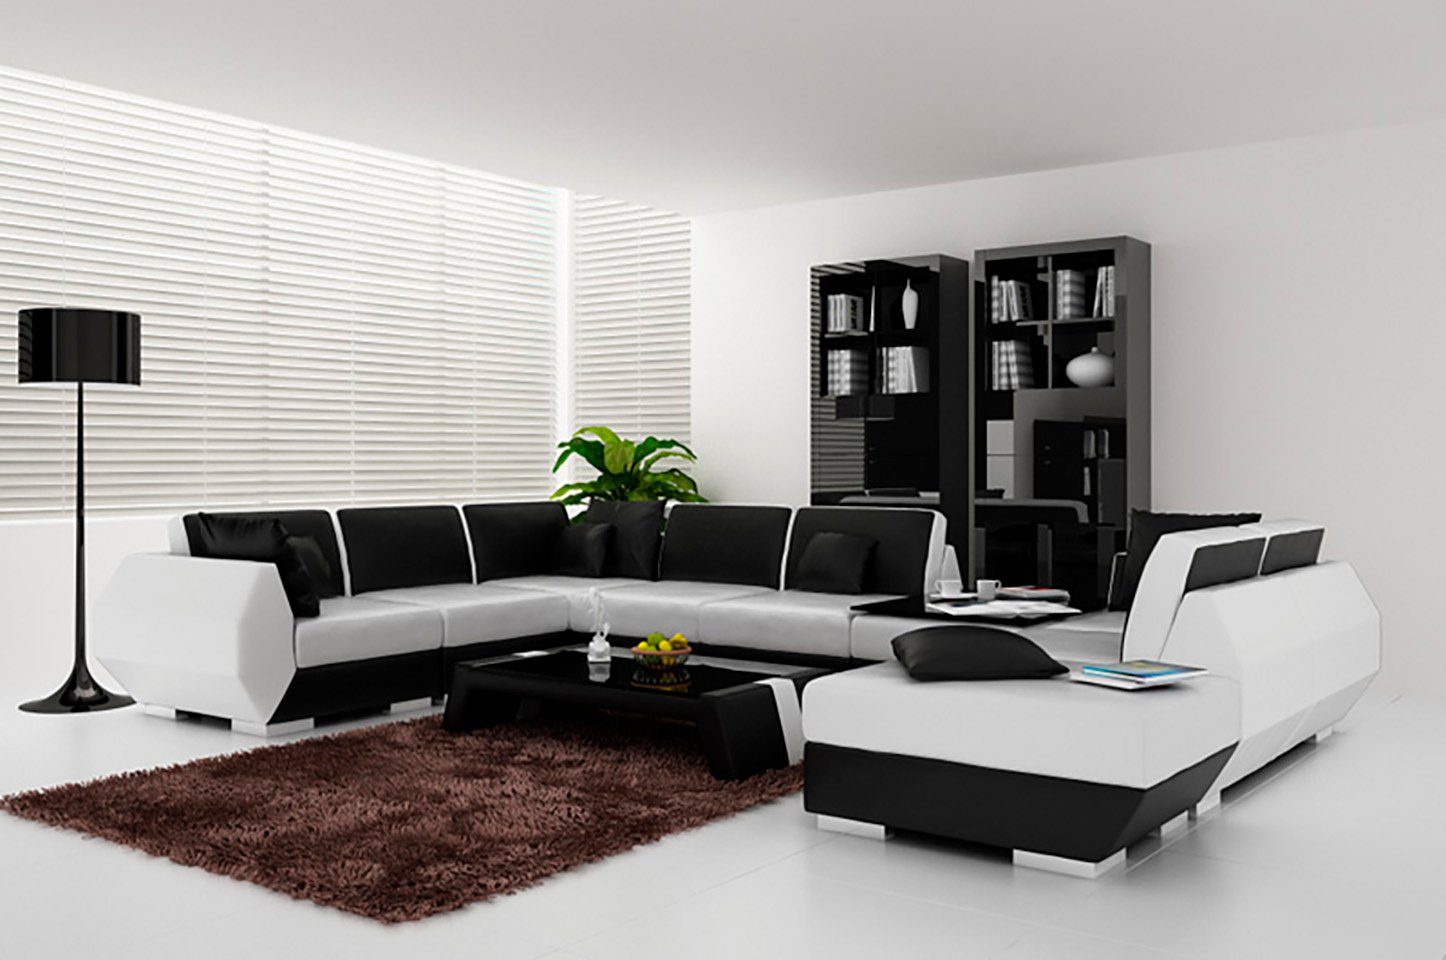 JVmoebel Ecksofa, Ledersofa Couch Design Sofa Ecksofa Eck Neu Sofa Modern